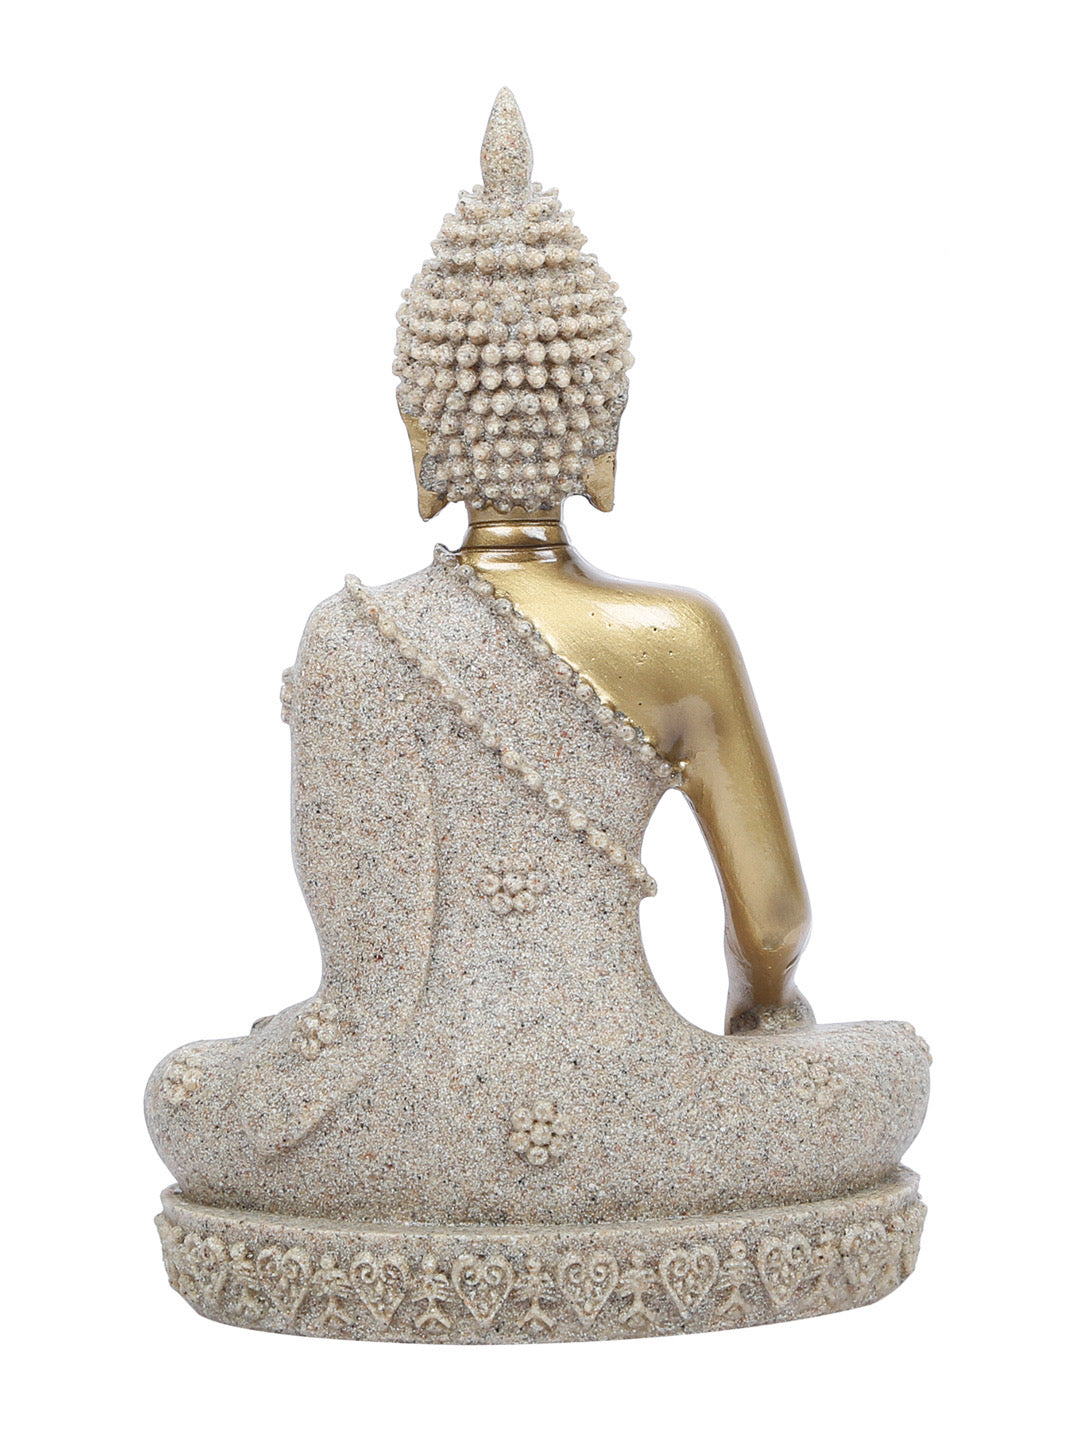 Golden Hue Zen Buddha Statue - Default Title (REF19658)